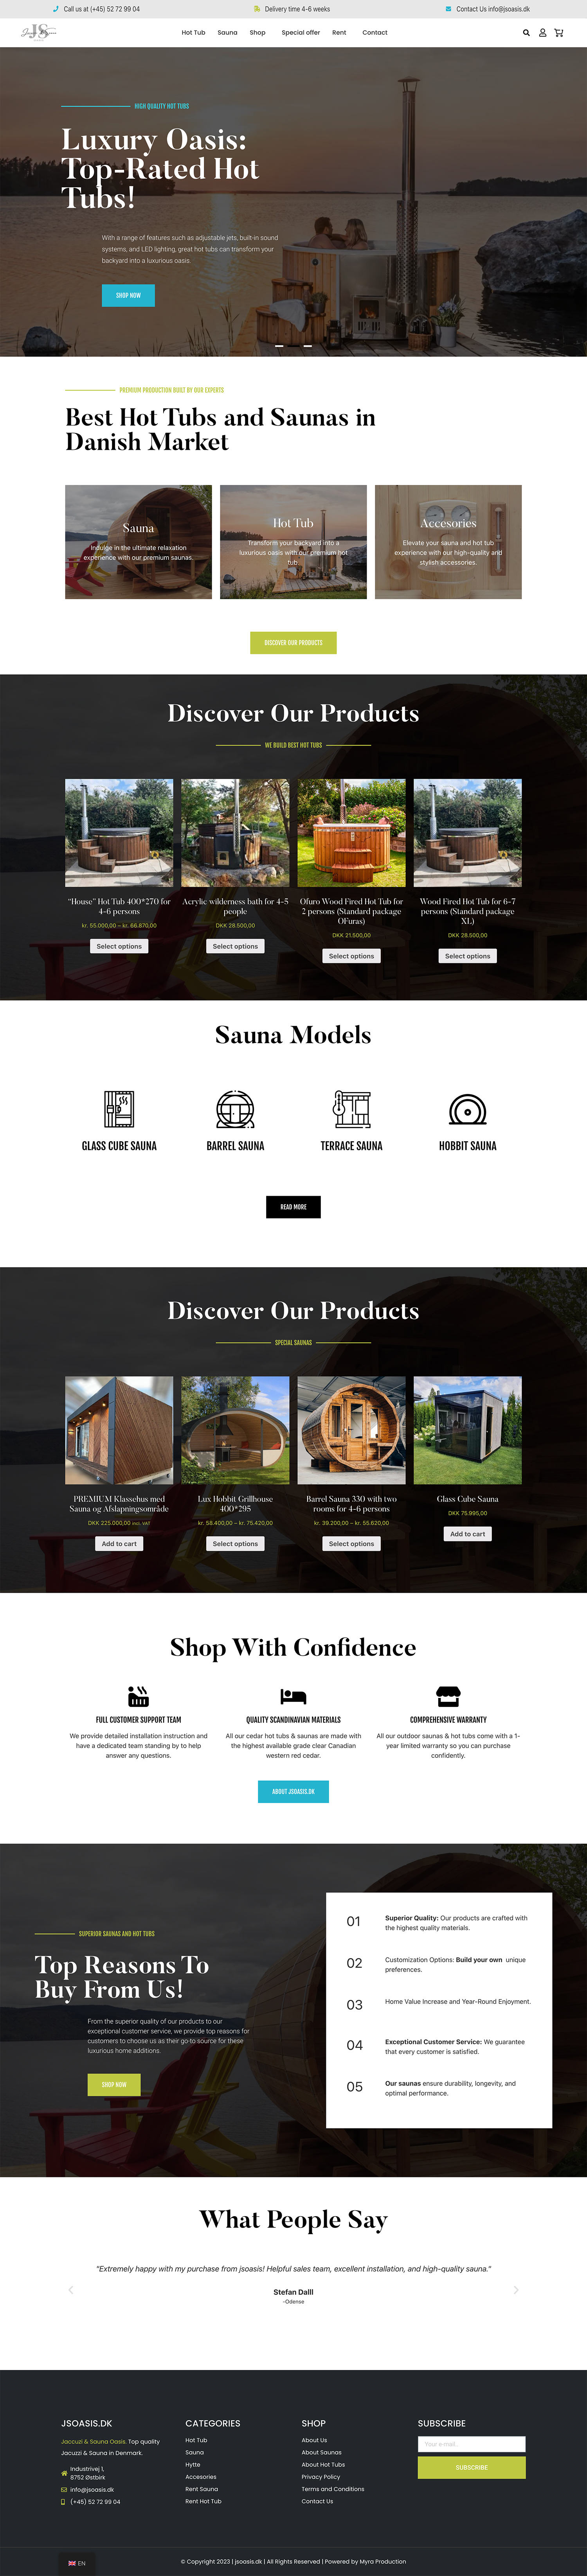 web dizainas darbai interneto svetainiu kurimas woocommerce parduotuve